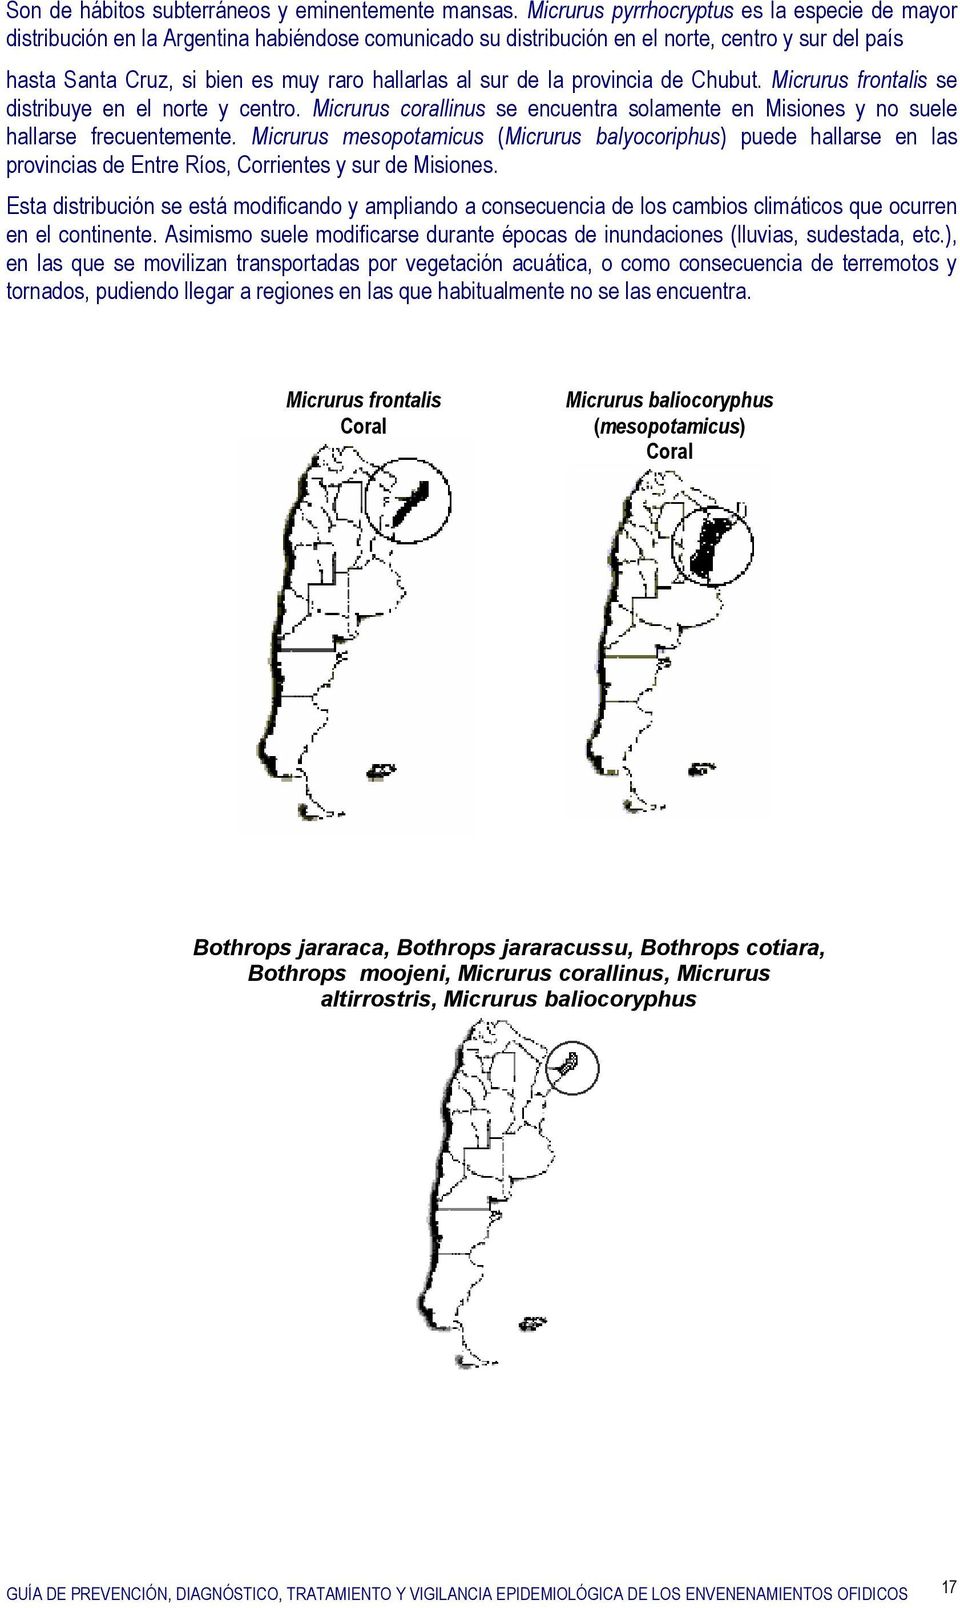 sur de la provincia de Chubut. Micrurus frontalis se distribuye en el norte y centro. Micrurus corallinus se encuentra solamente en Misiones y no suele hallarse frecuentemente.